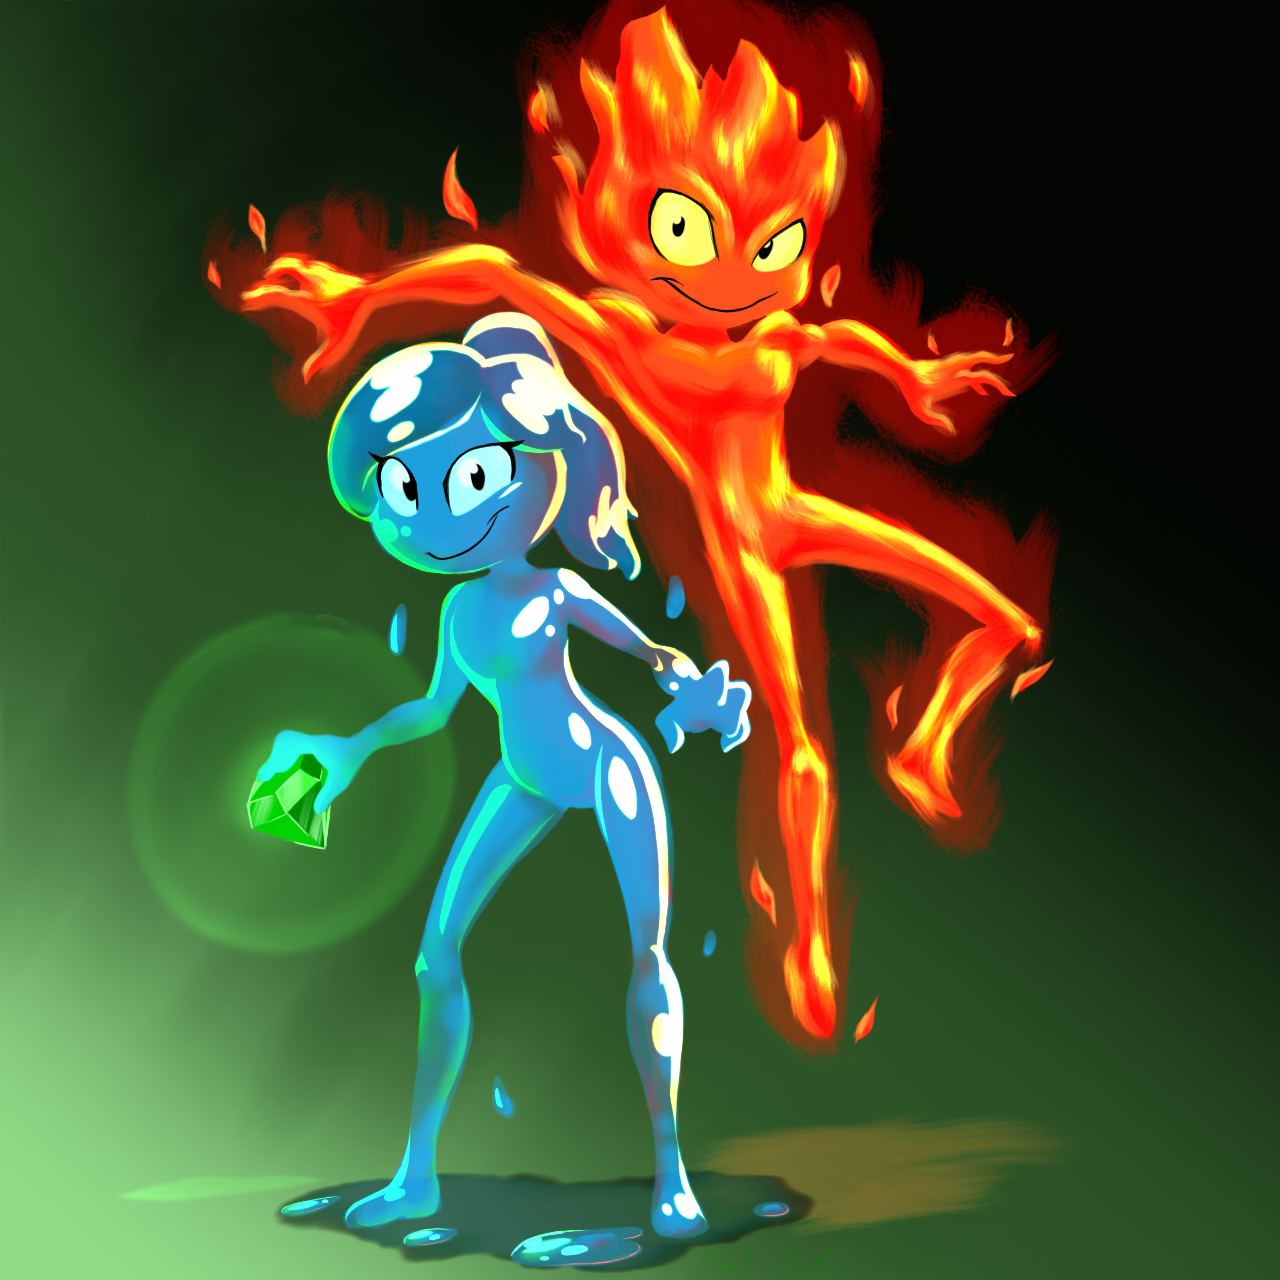 Fireboy and Watergirl by AgentJayHawk on DeviantArt